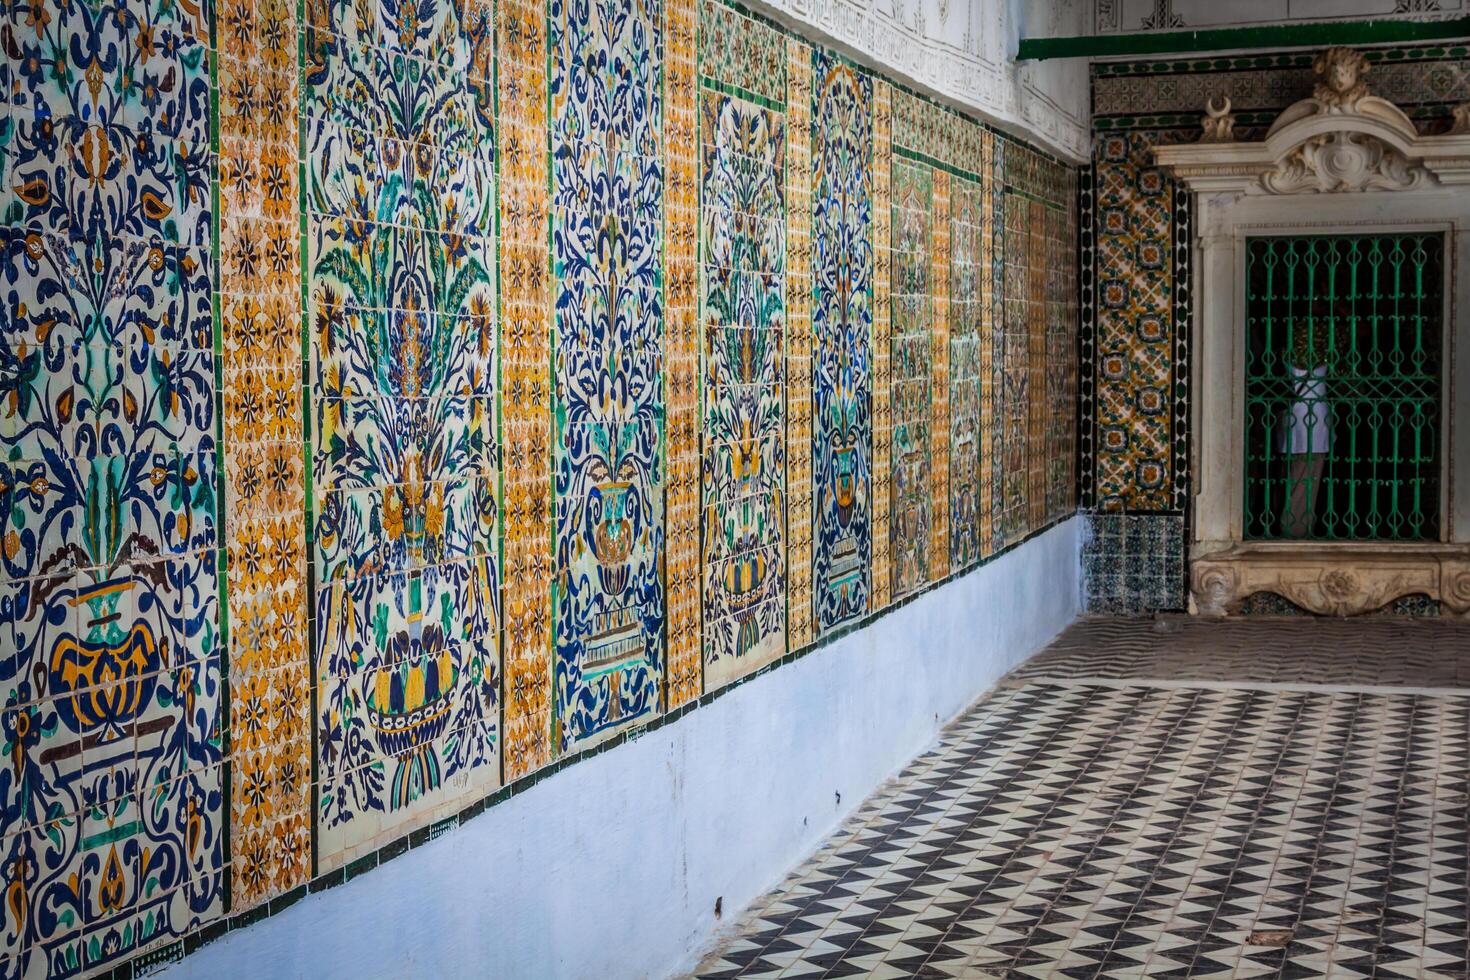 Tunísia. Kairouan - a Zaouia do sidi saheb a barbearia mesquita fragmento do cerâmico lado a lado painel com floral e arquitetônico motivos foto